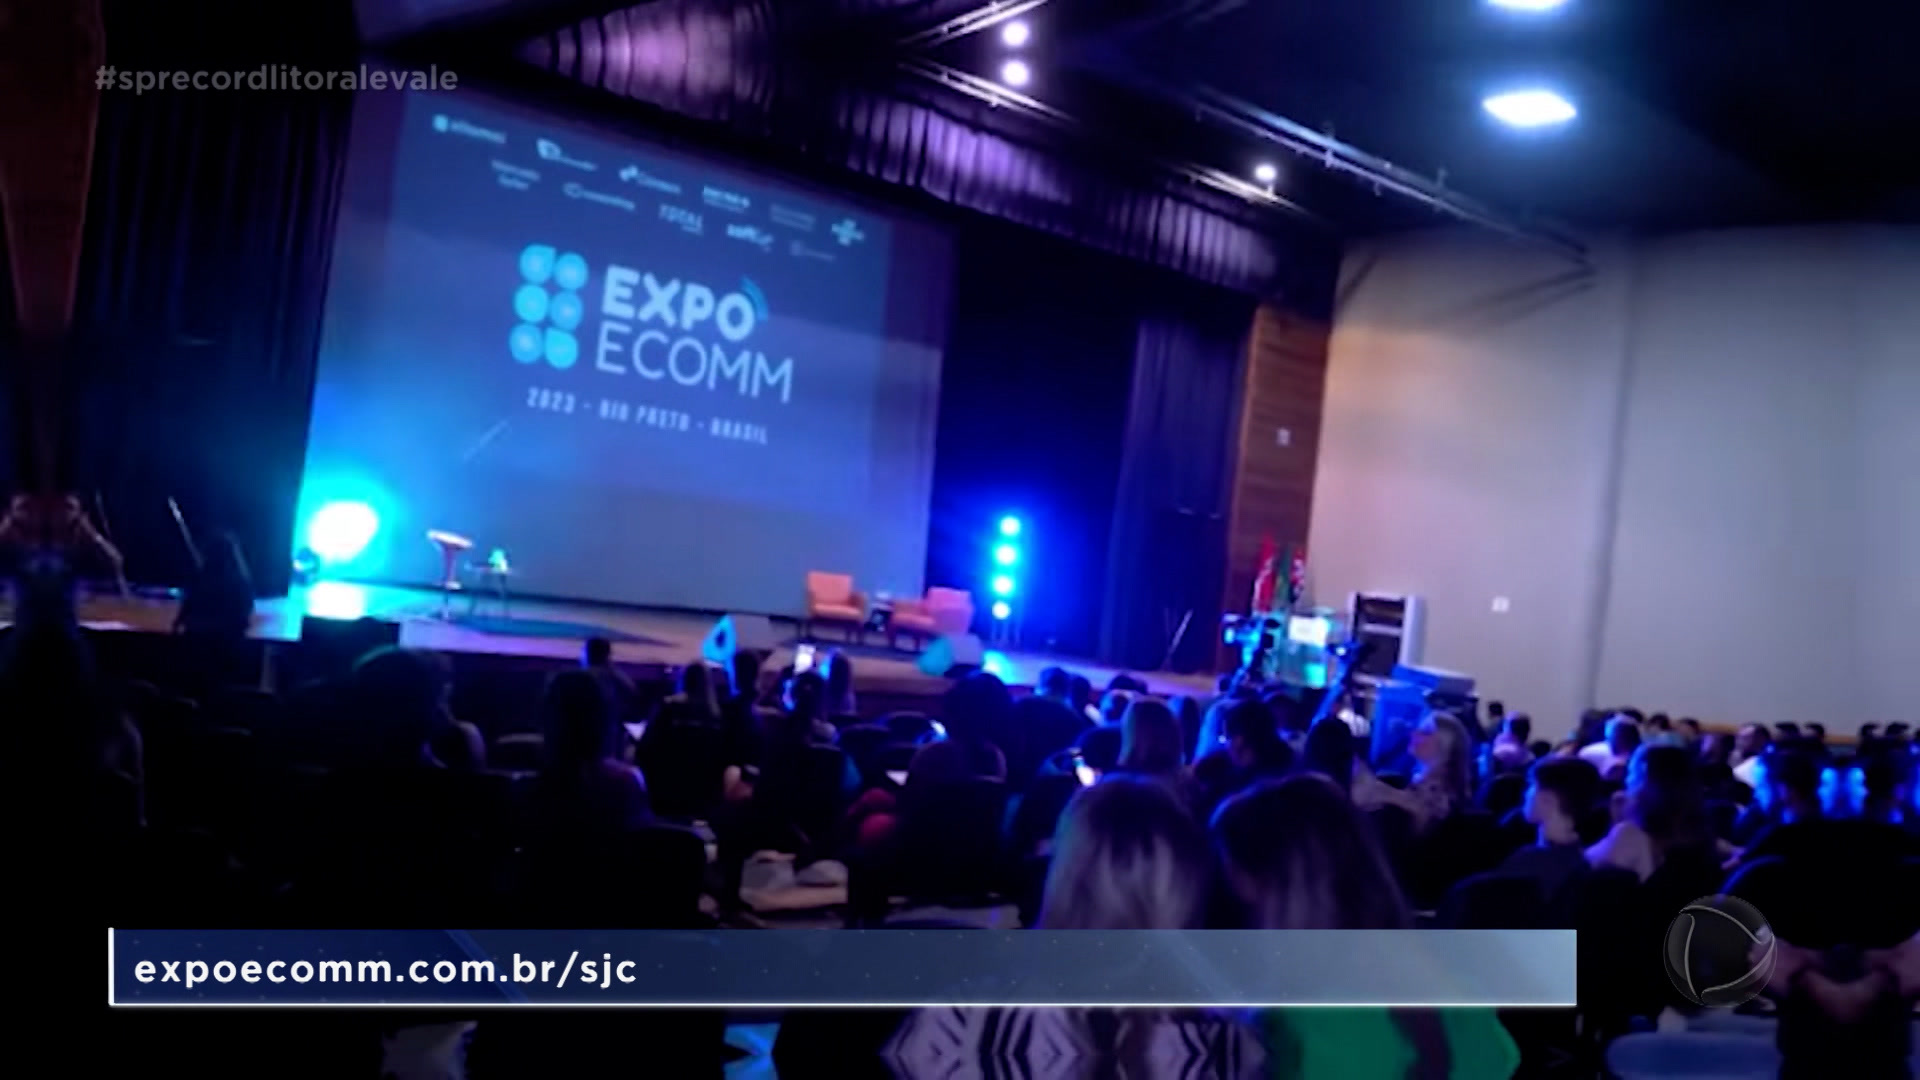 Vídeo: Ainda dá tempo de se inscrever para a Expoecomm